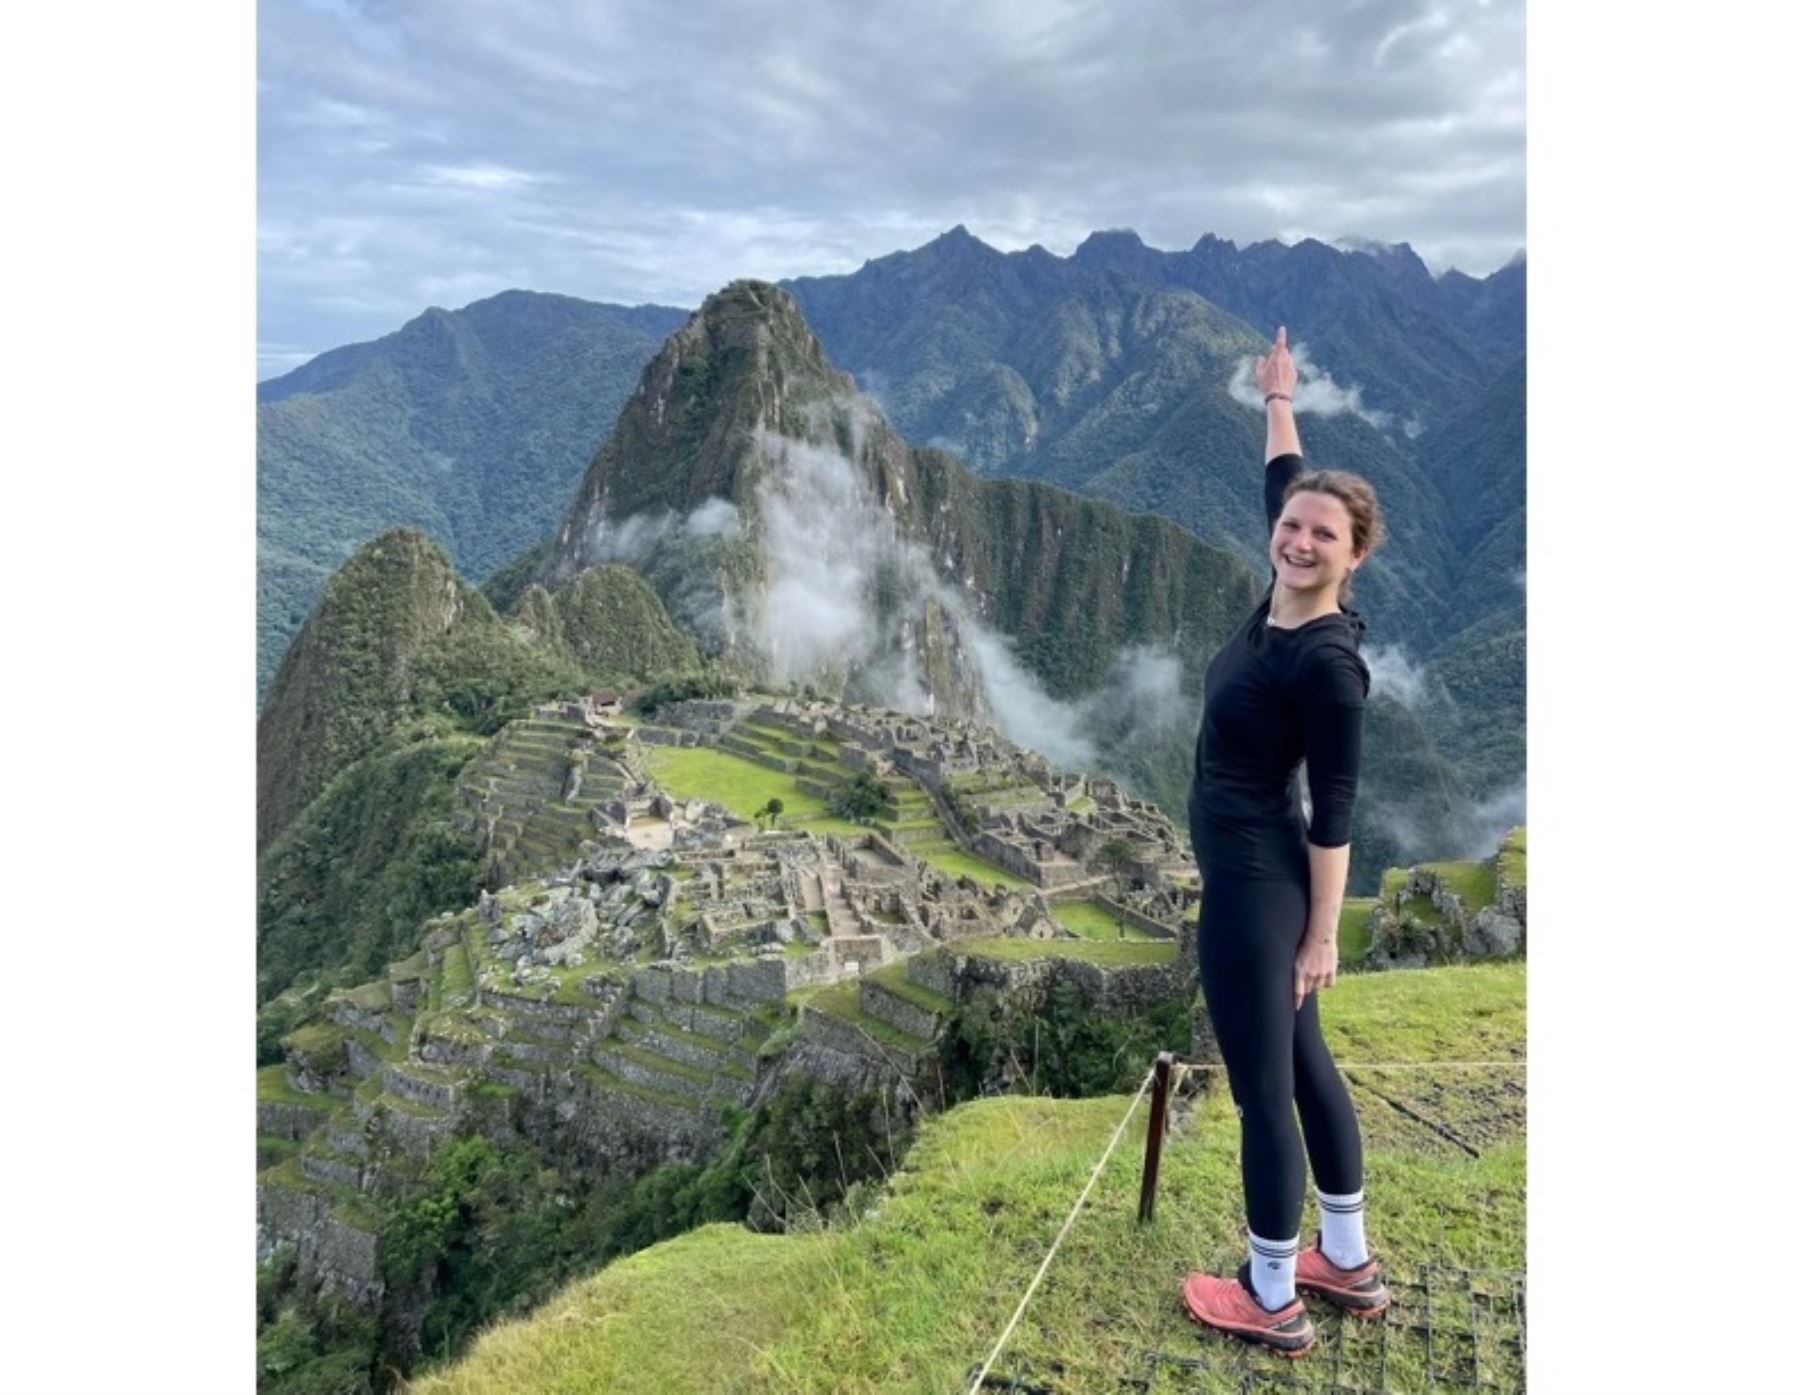 A mediados de enero pasado, Natasha Crombrugghe, la turista belga desaparecida en el valle del Colca, había visitado Machu Picchu, en Cusco. Foto: Facebook/Natasha Crombrugghe